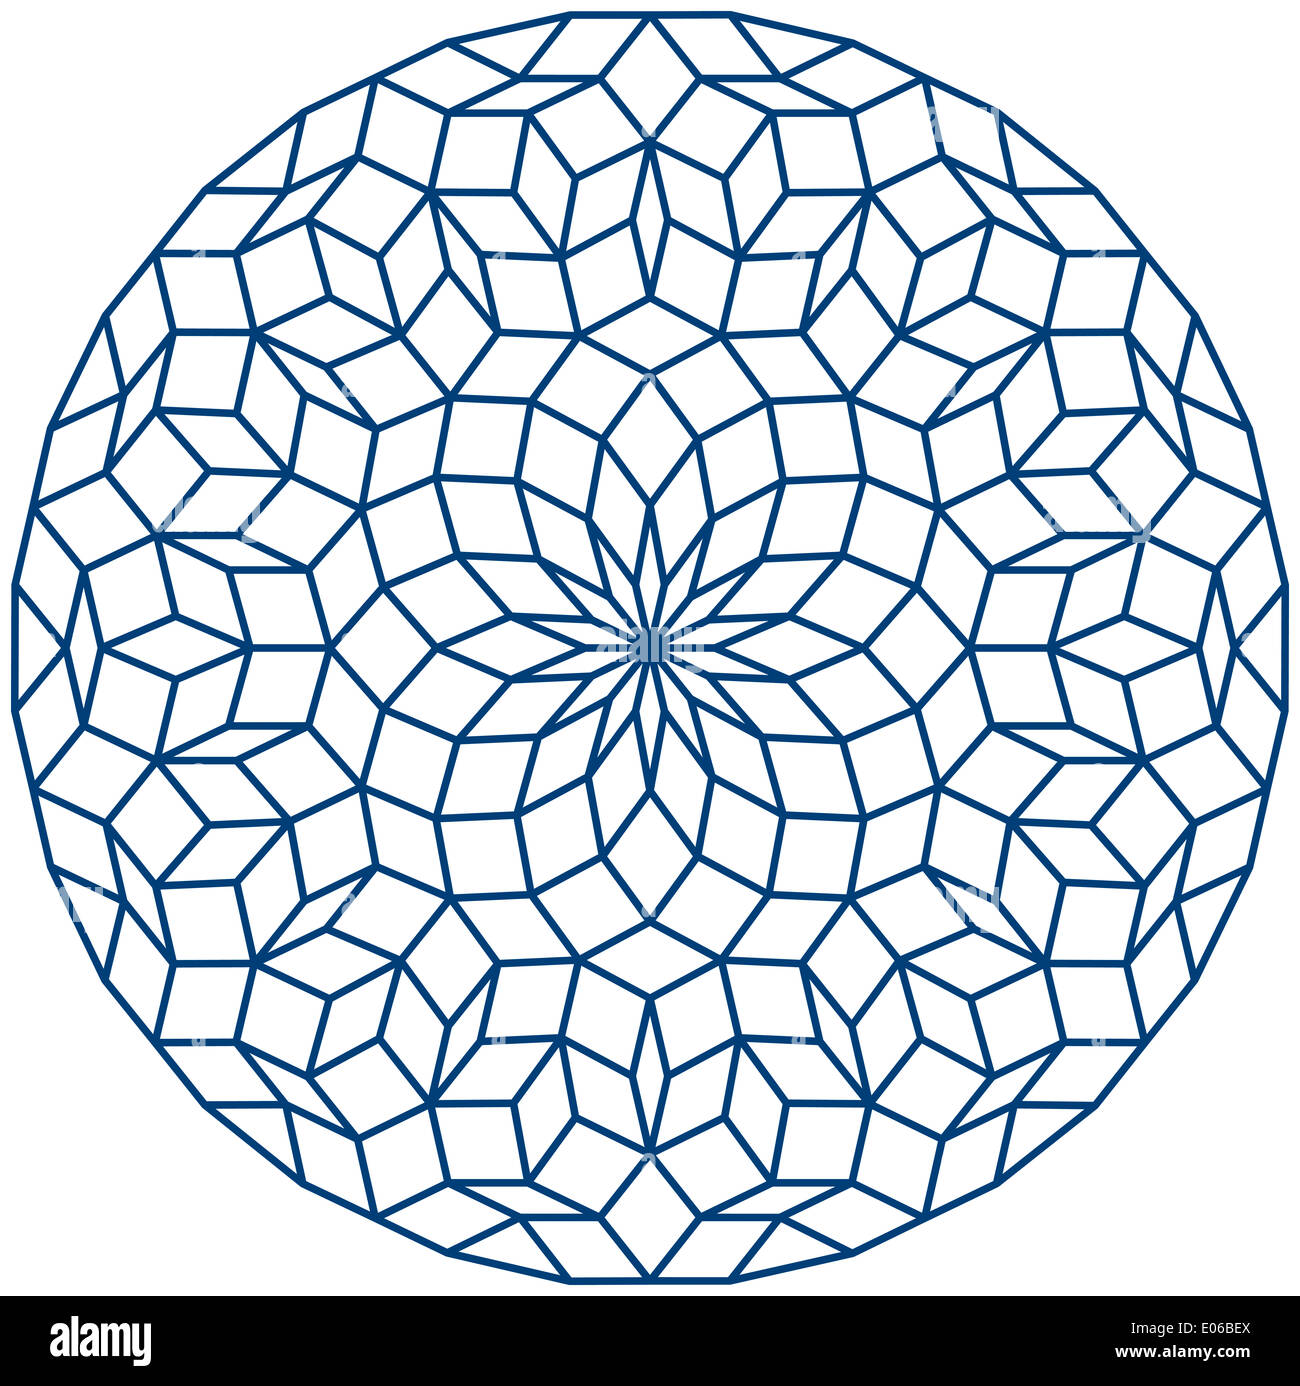 Penrose Tiling - Penrose-Muster, eine nicht-periodische Fliesen durch aperiodische Fahrgast-/Prototiles erzeugt. Stockfoto